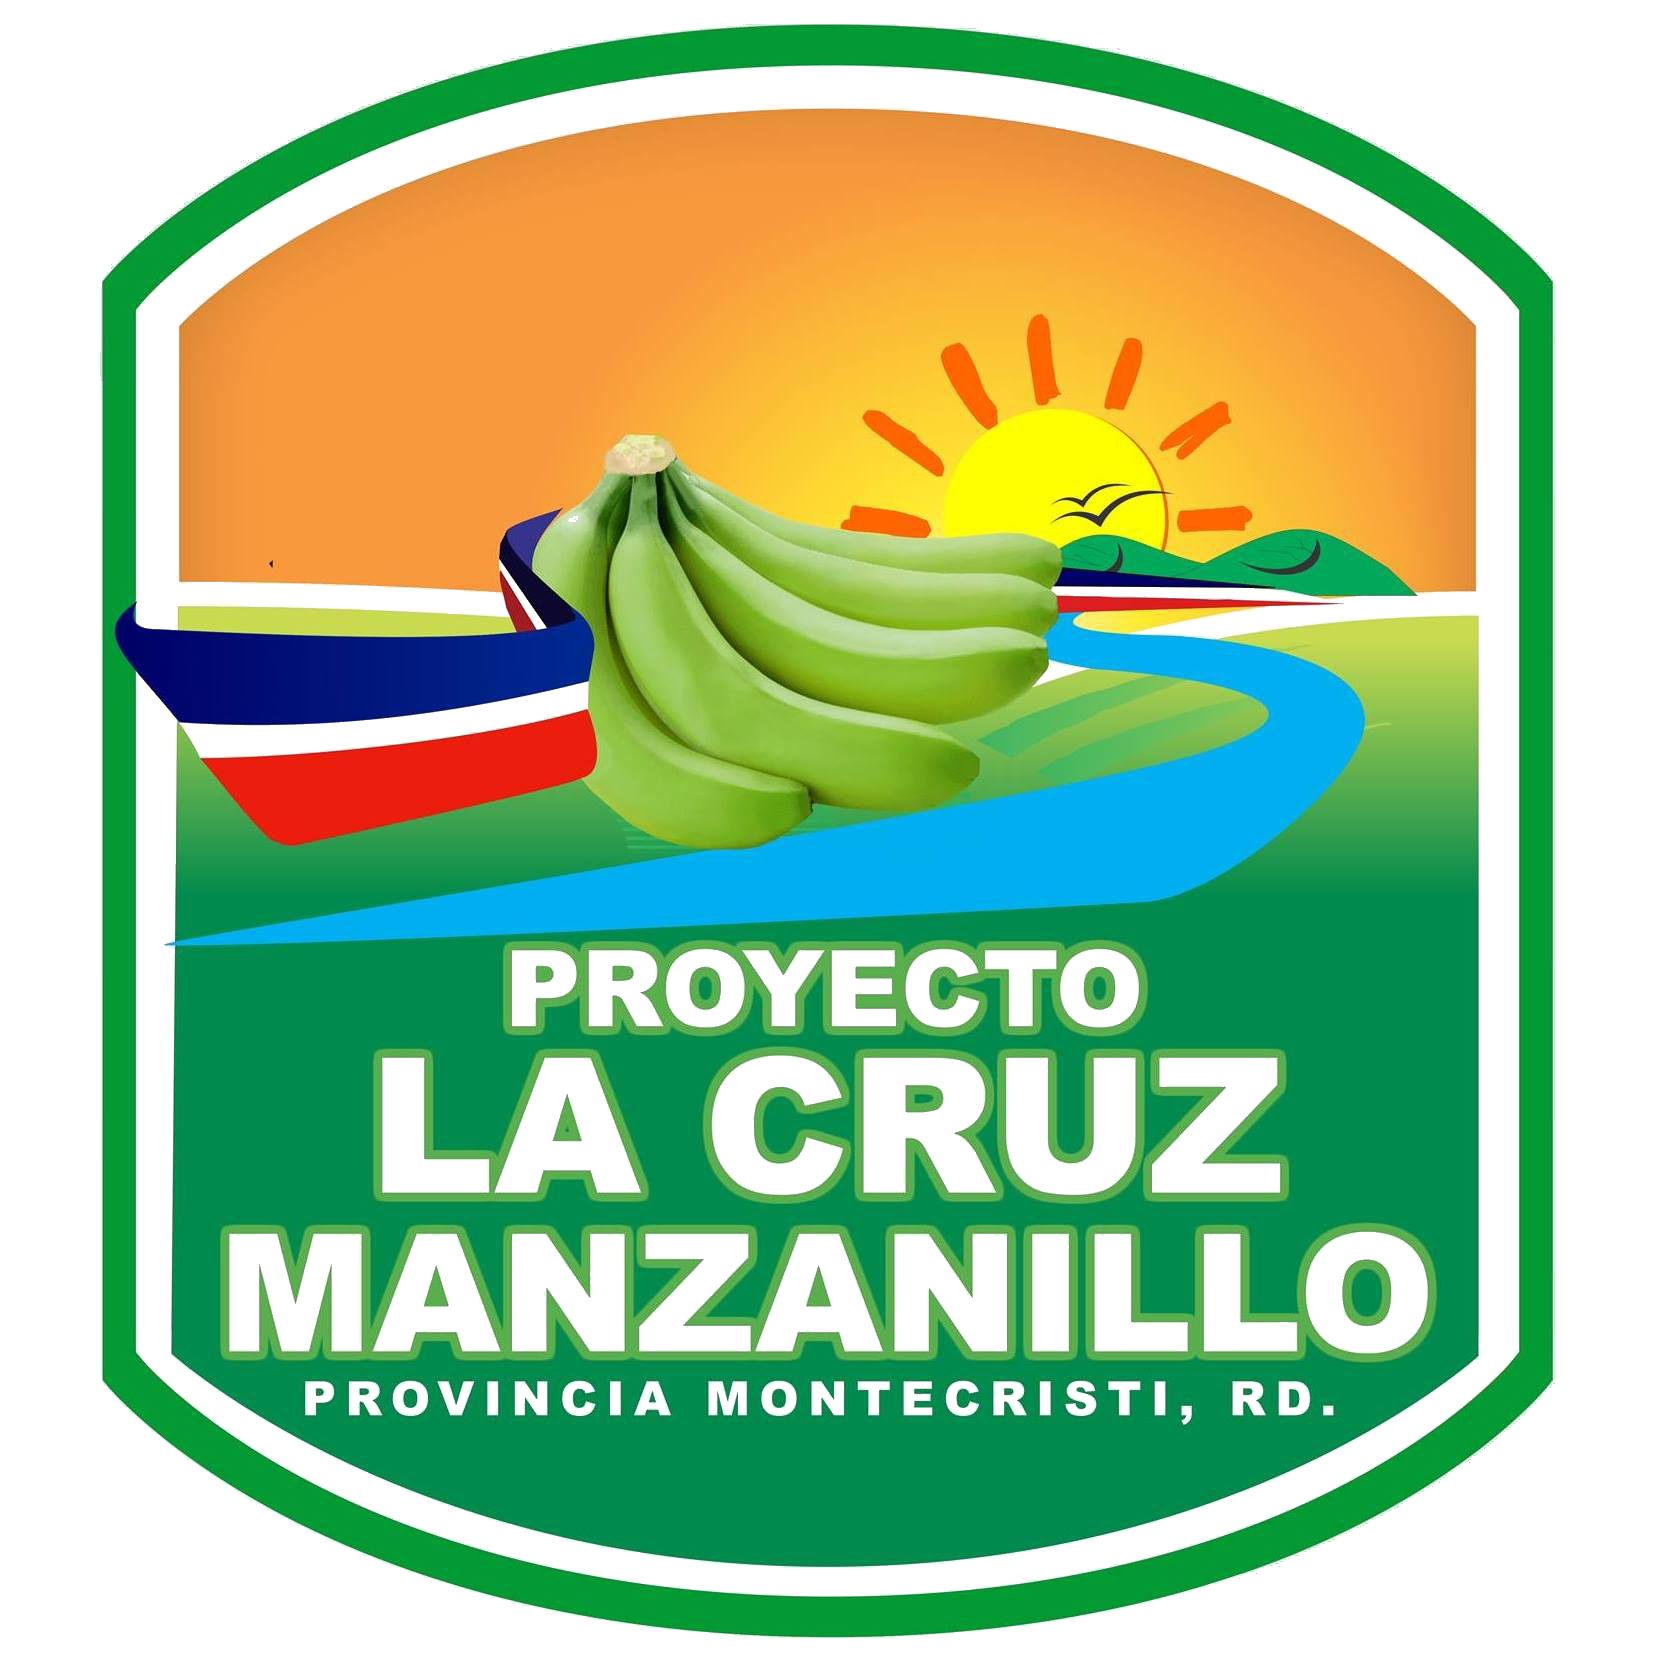 https://0201.nccdn.net/1_2/000/000/154/c0e/Proyecto-la-cruz-de-manzanilloo-1672x1672.png